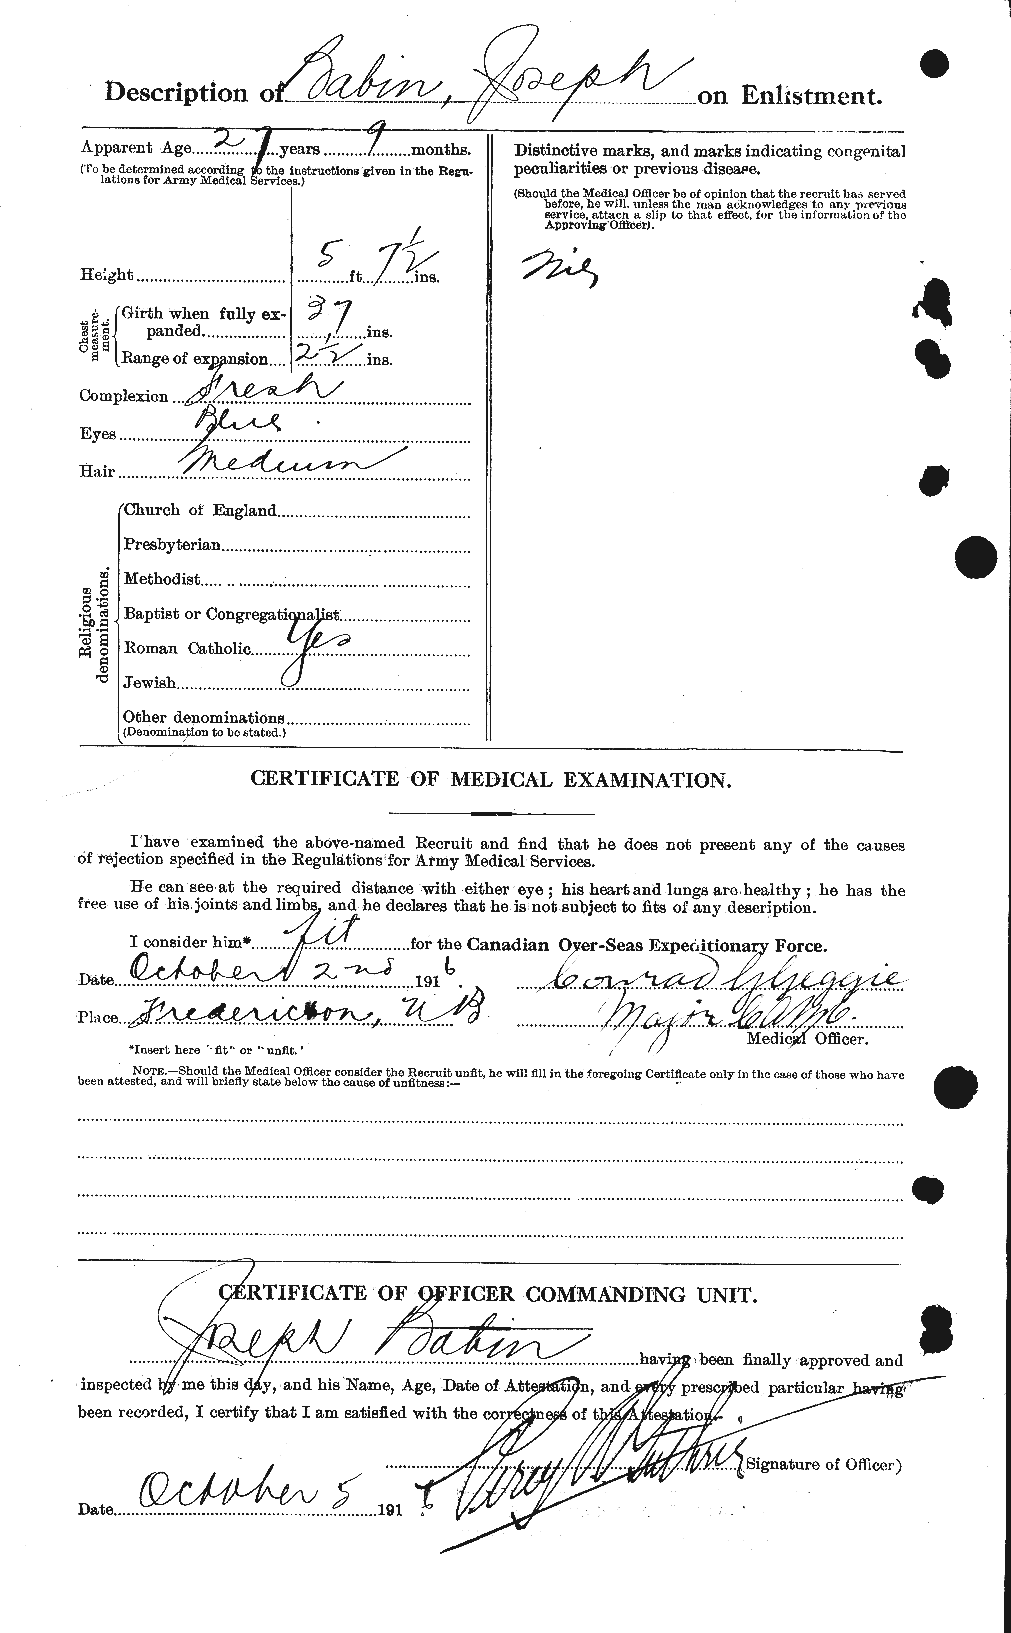 Dossiers du Personnel de la Première Guerre mondiale - CEC 218139b